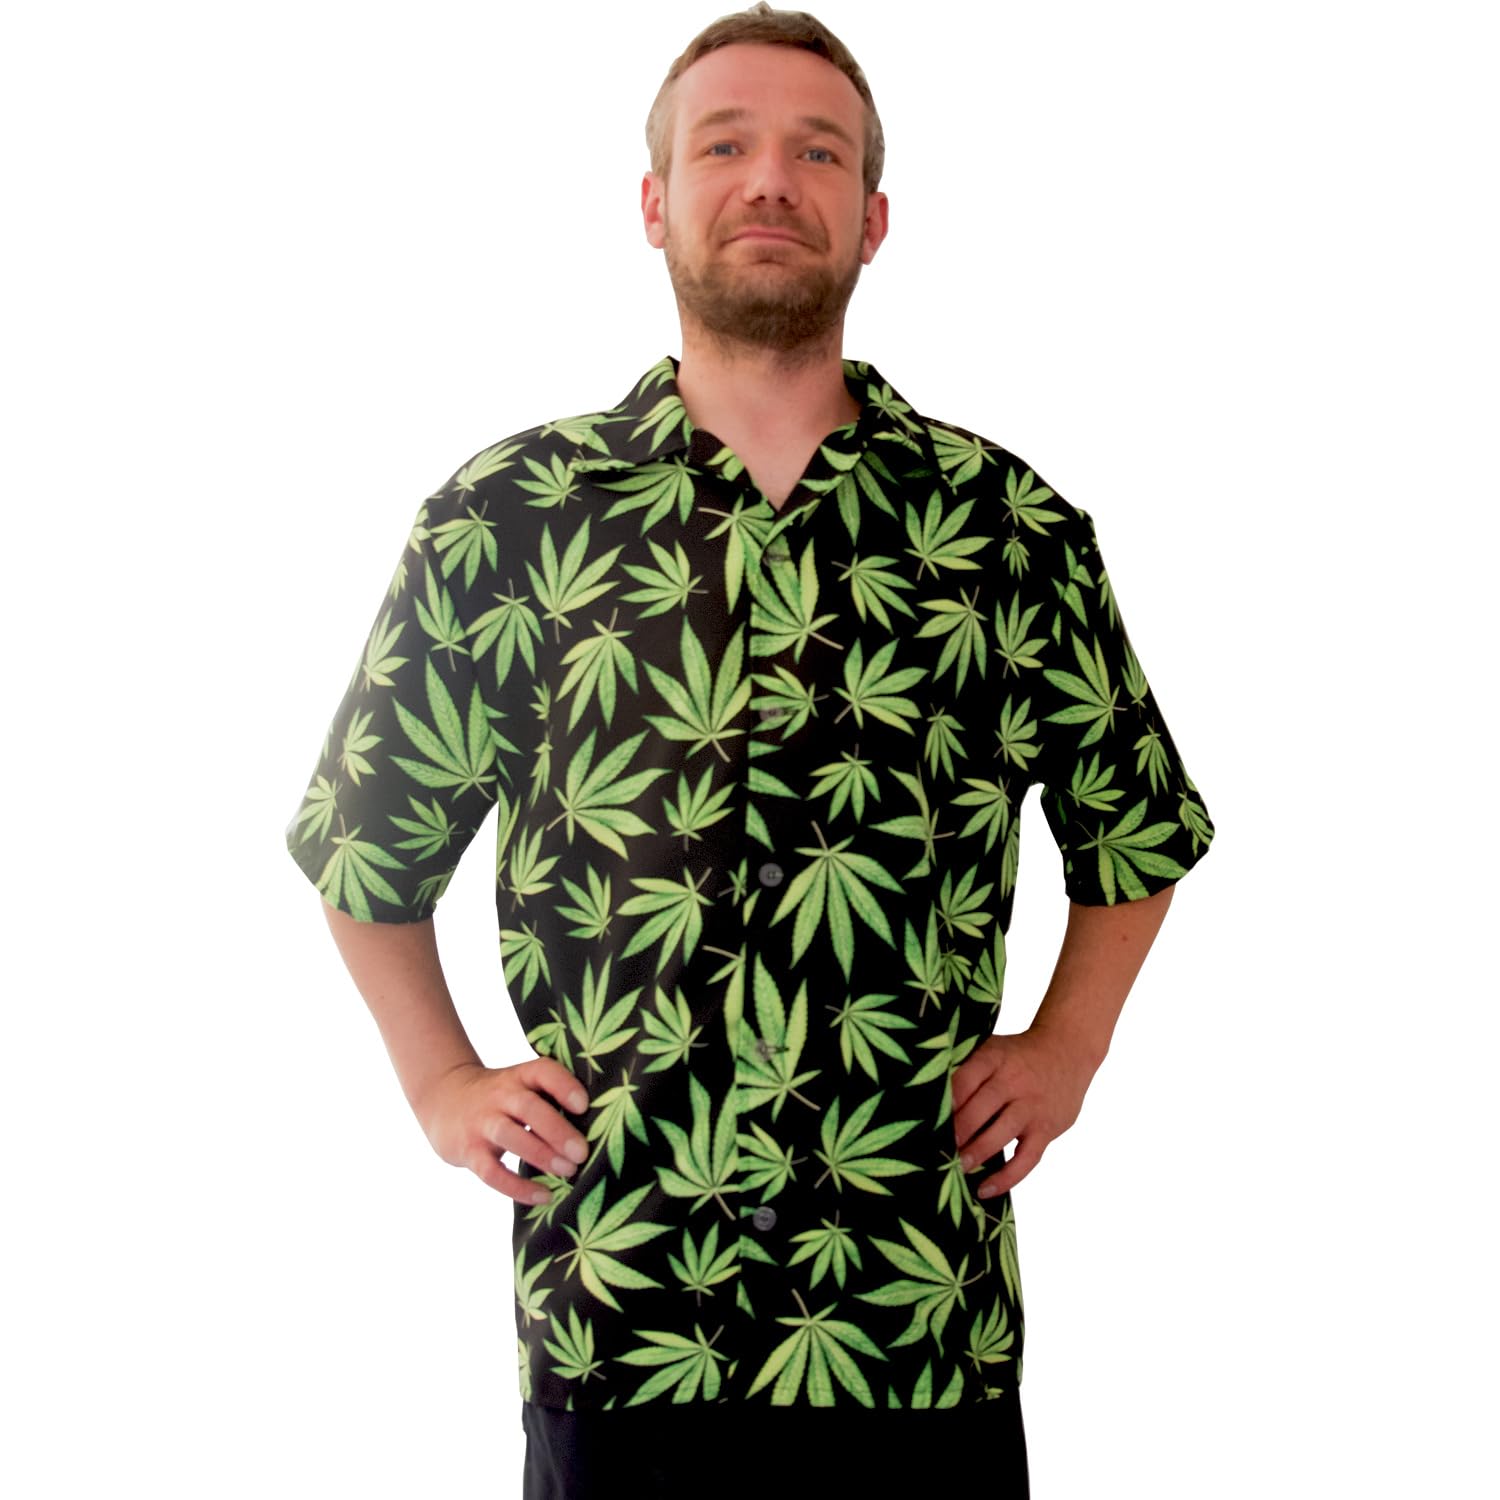 Krause & Sohn Hawaii Hemd schwarz mit Hanfblätter-Motiv grün Mr. Cannabis für Herren Gr. 50-60 JGA Sommerhemd Freizeit Party-Outfit (as3, Numeric, Numeric_54, Numeric_56, Regular, Regular)